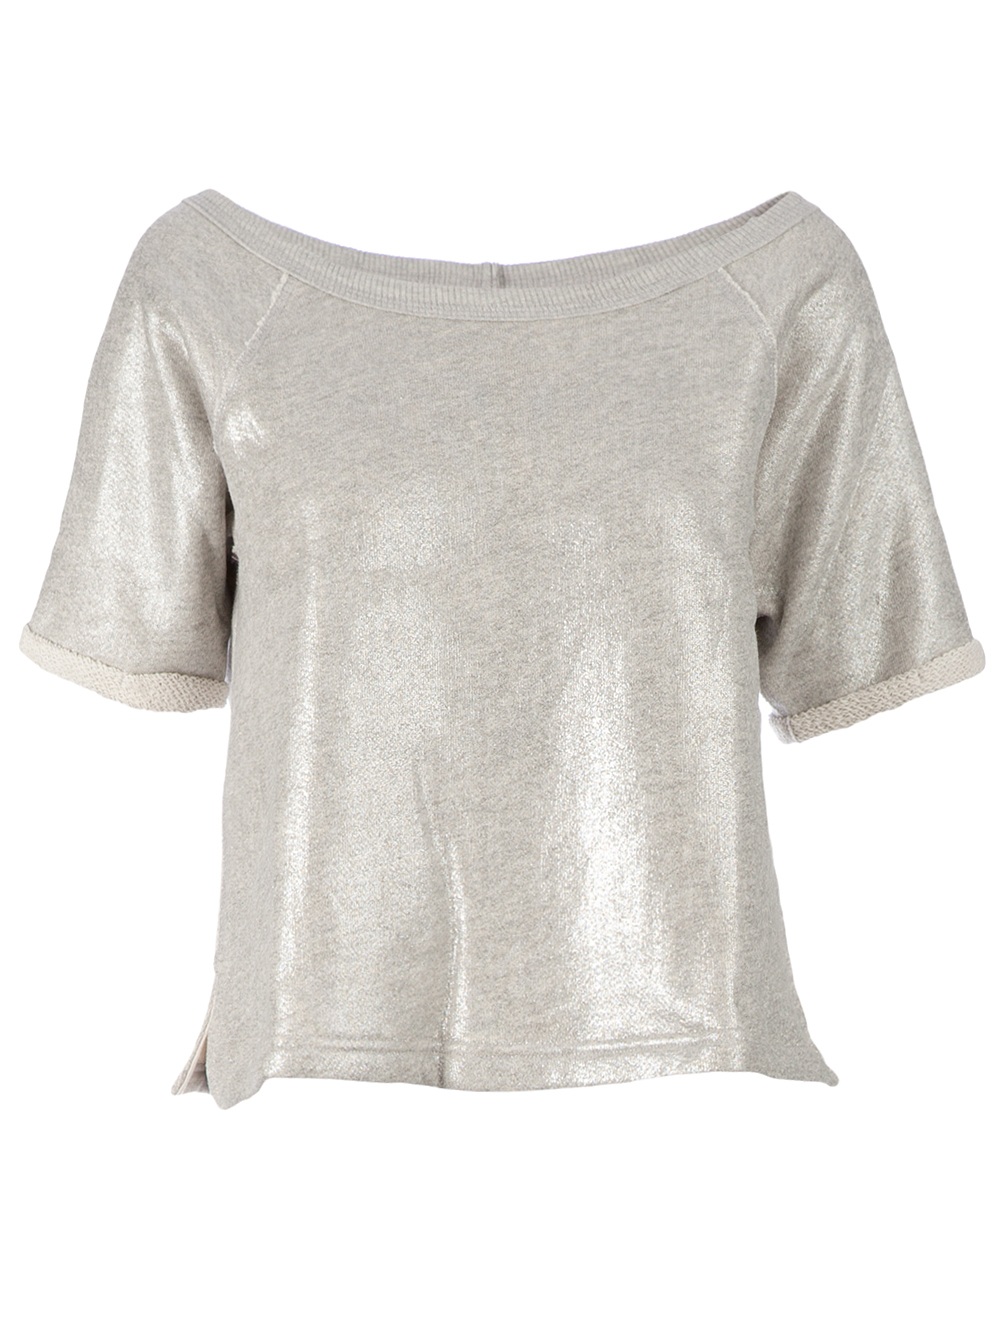 Enza Costa Metallic Cropped Tshirt in Silver | Lyst